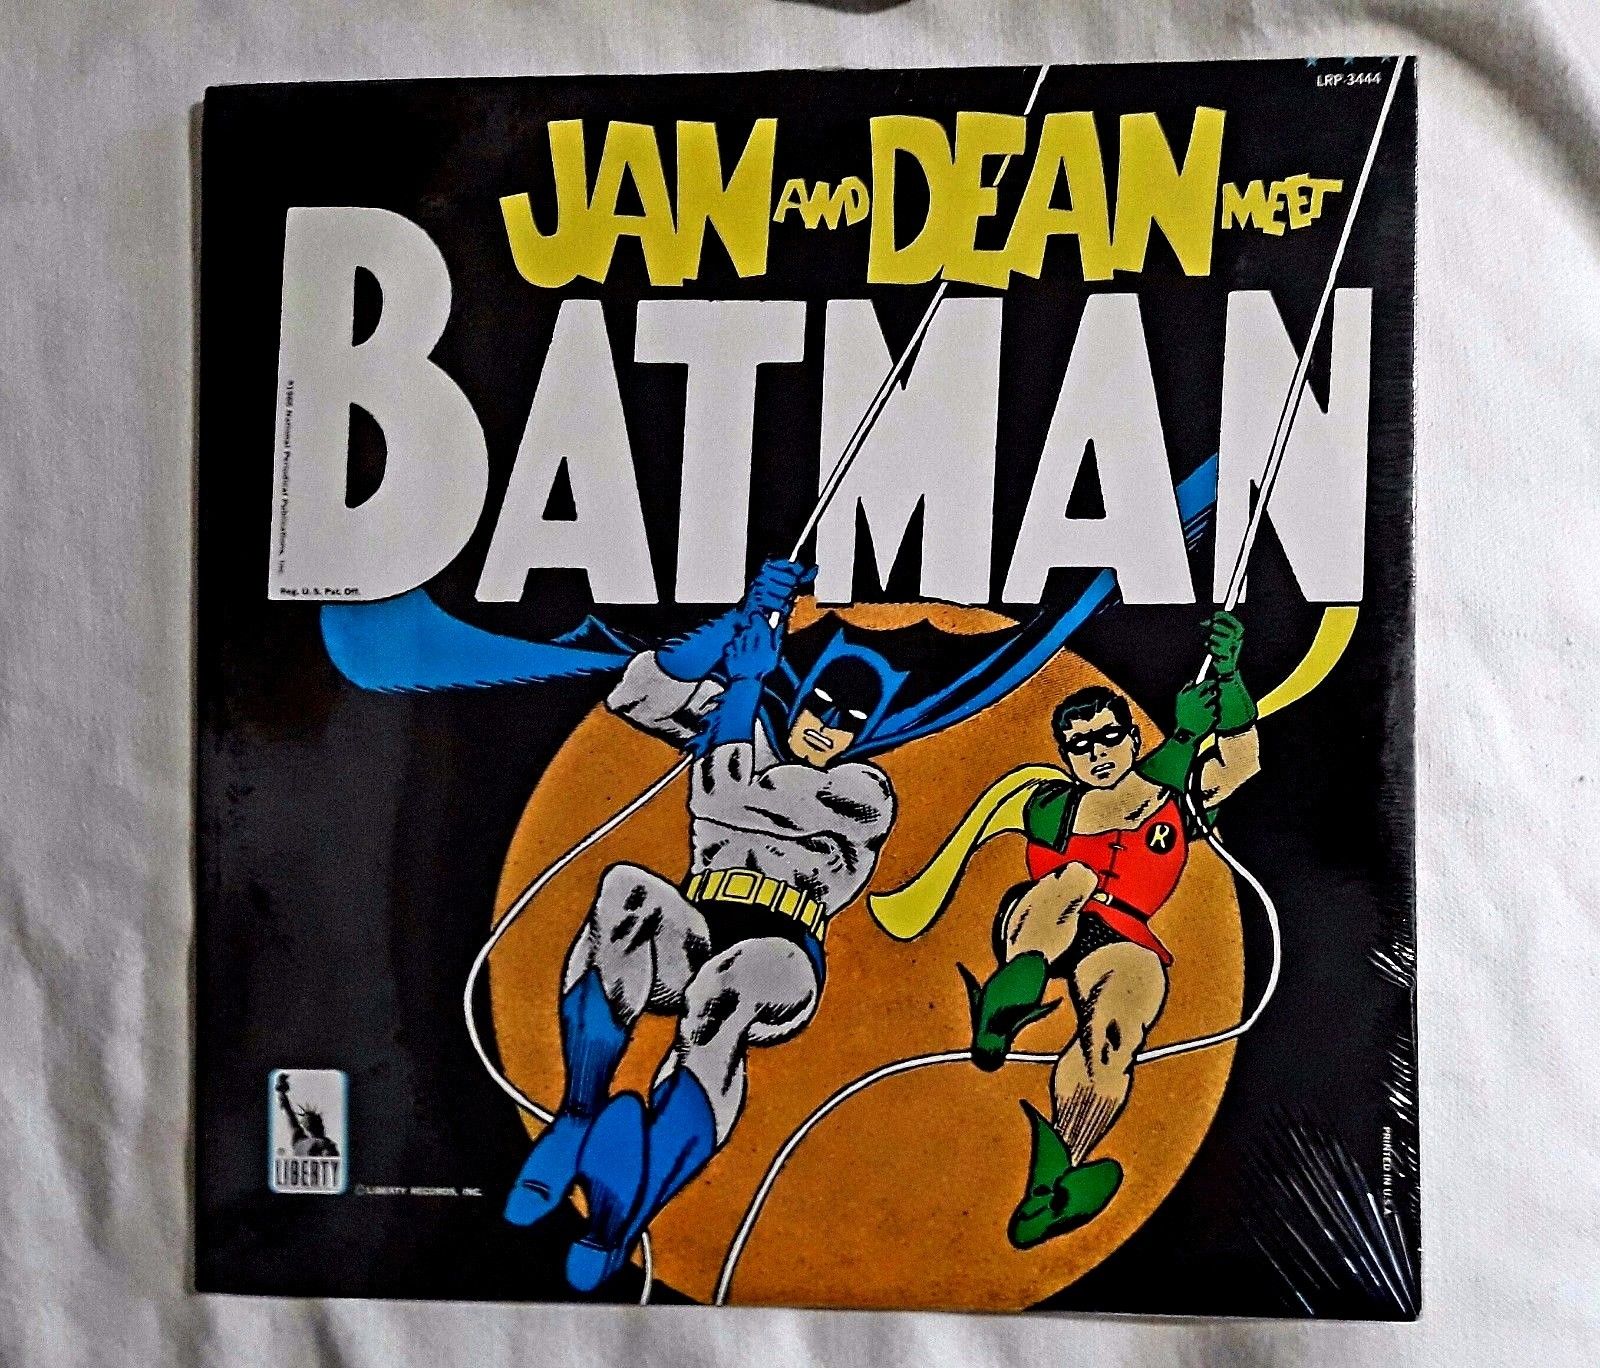 1966 Jan And Dean Meet Batman Lp Record SEALED HIGH GRADE Shape LRP-3444